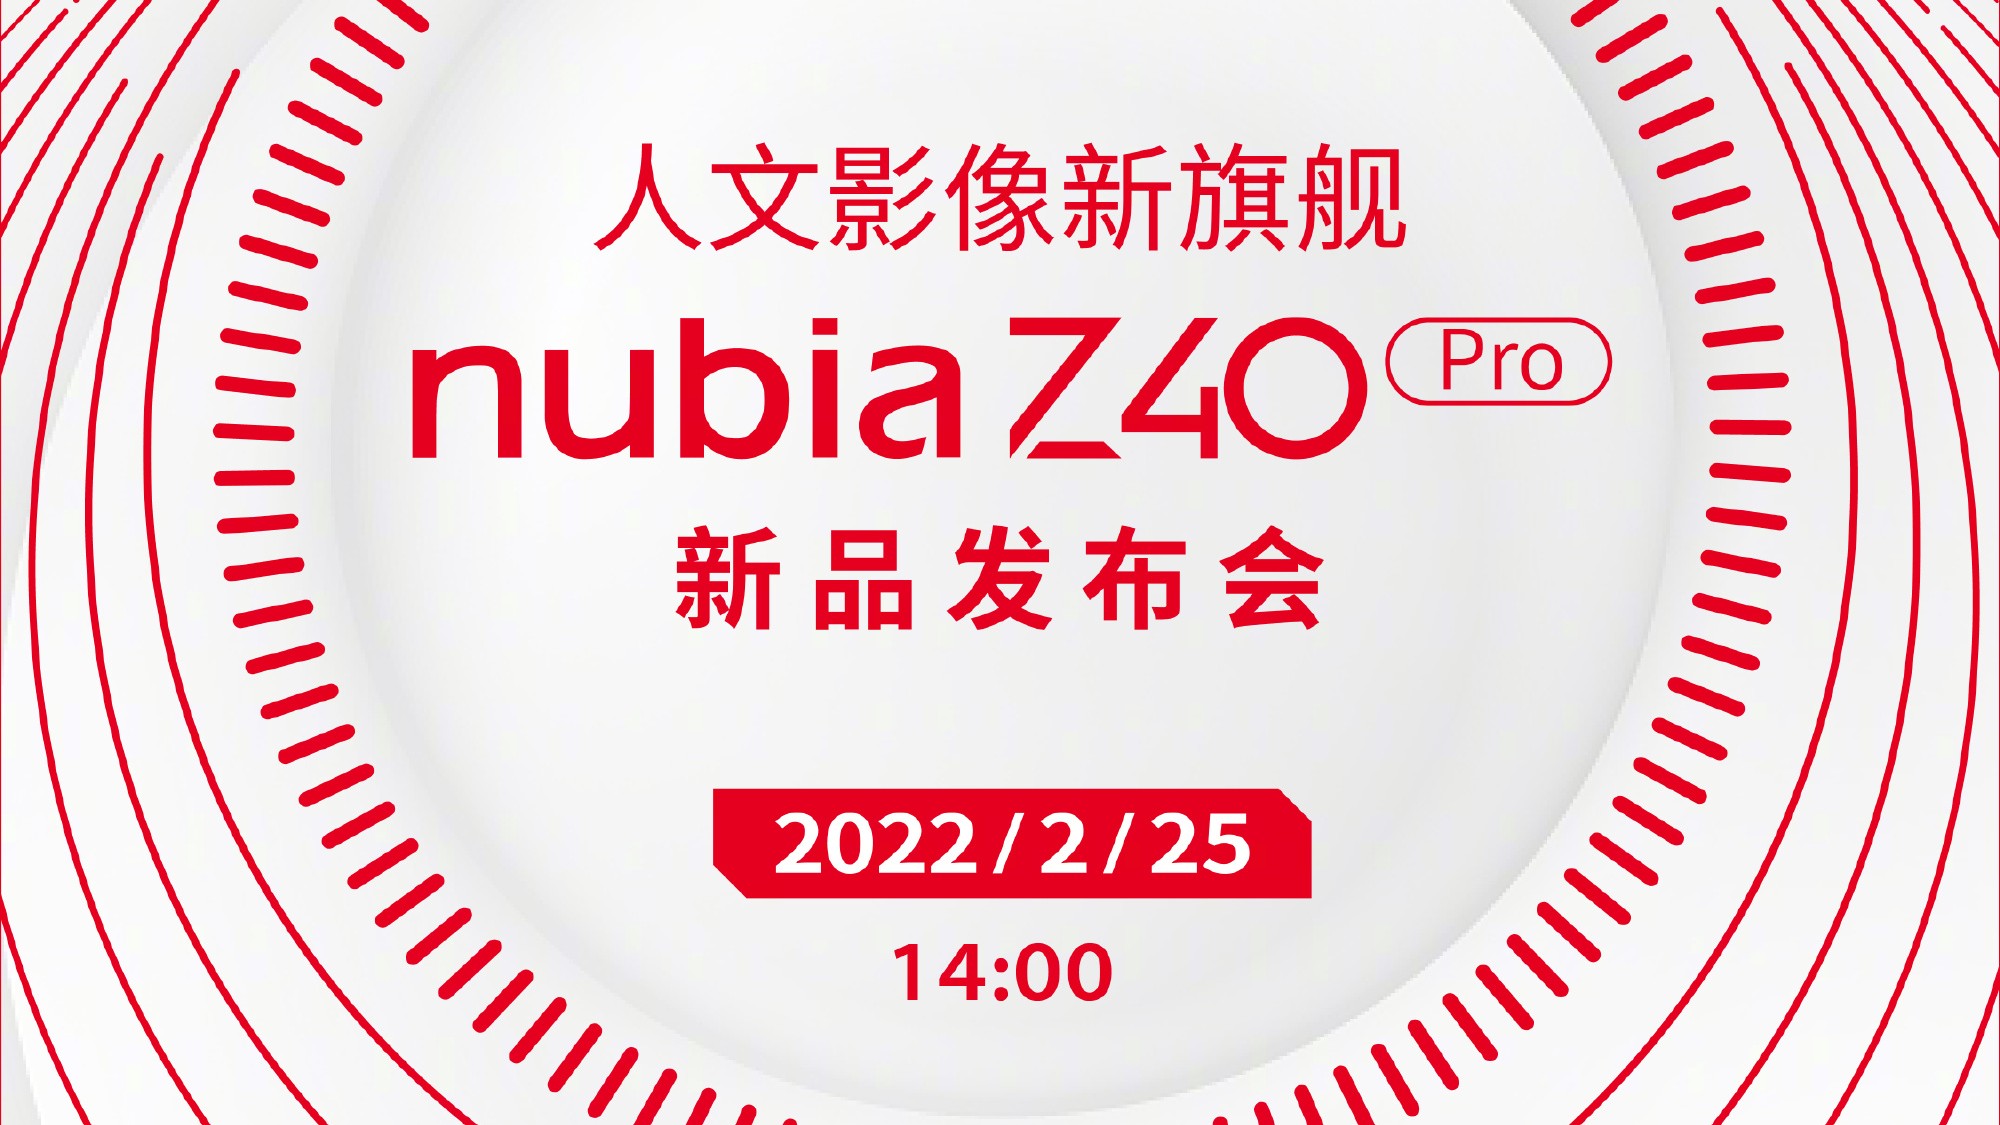 Nubia Z40 Pro Akan Dilancarkan Pada 25 Februari Ini